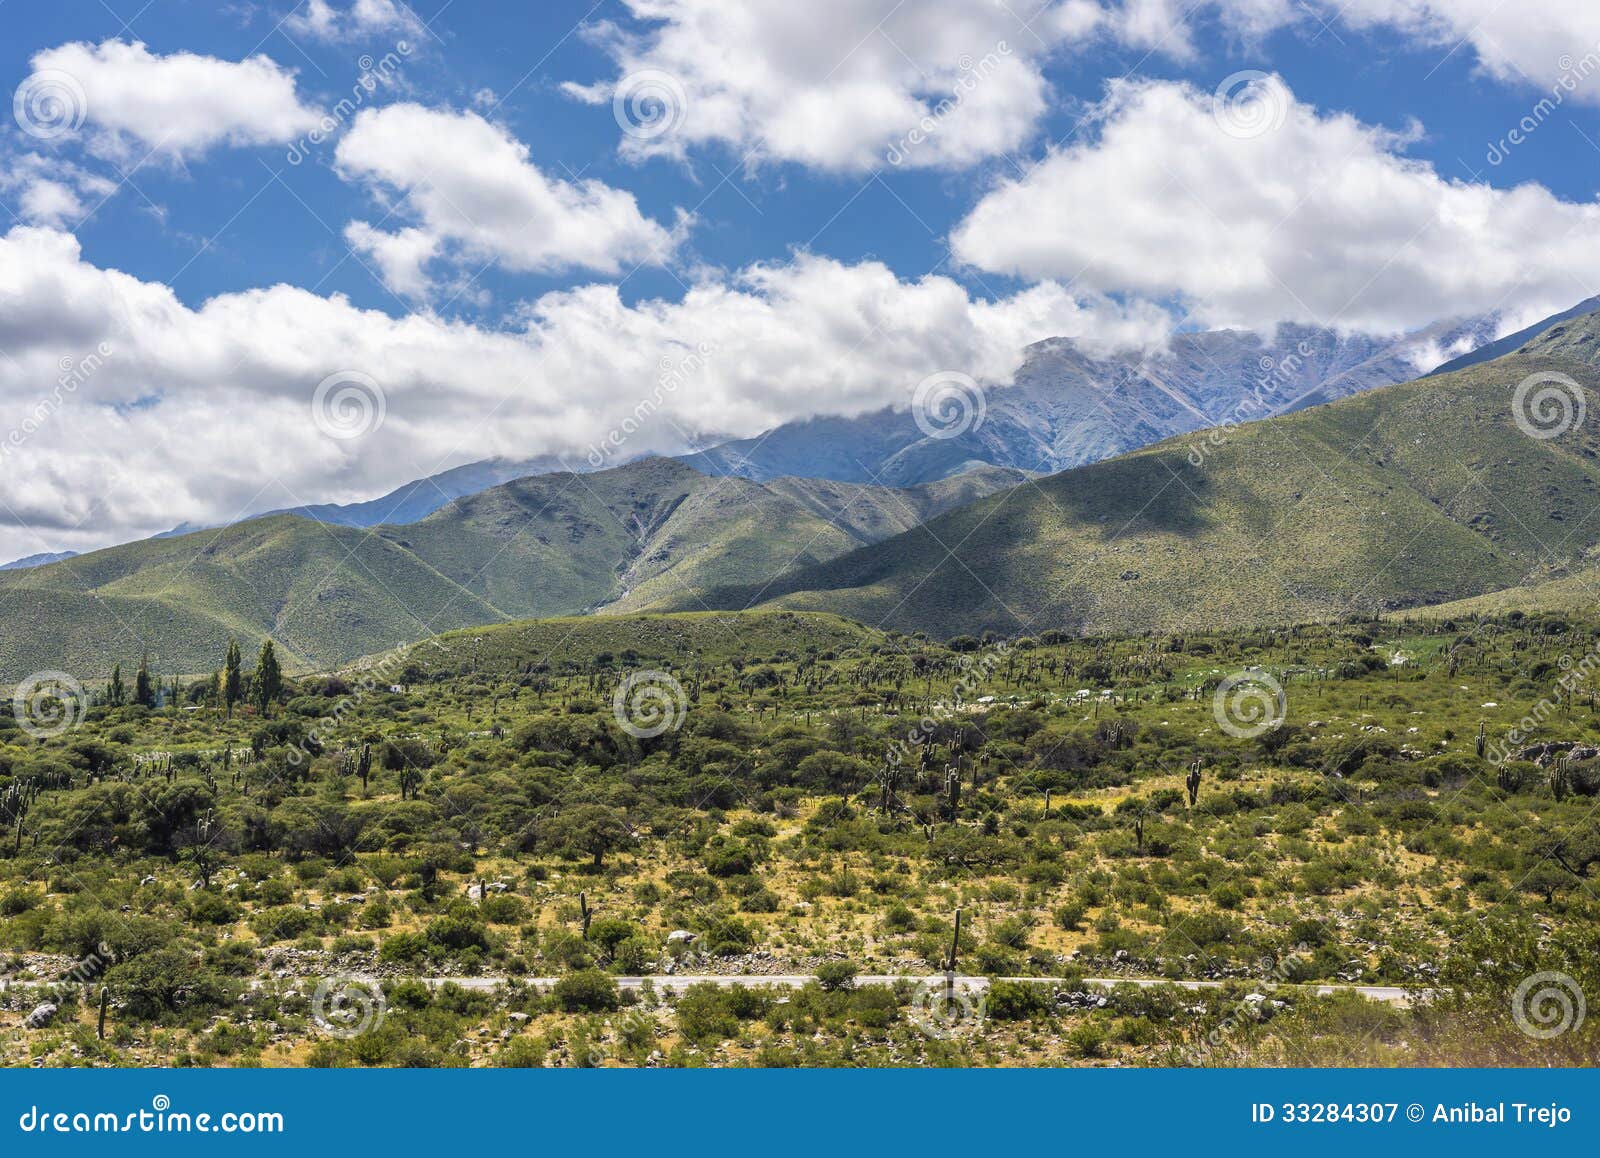 calchaqui valley in tucuman, argentina